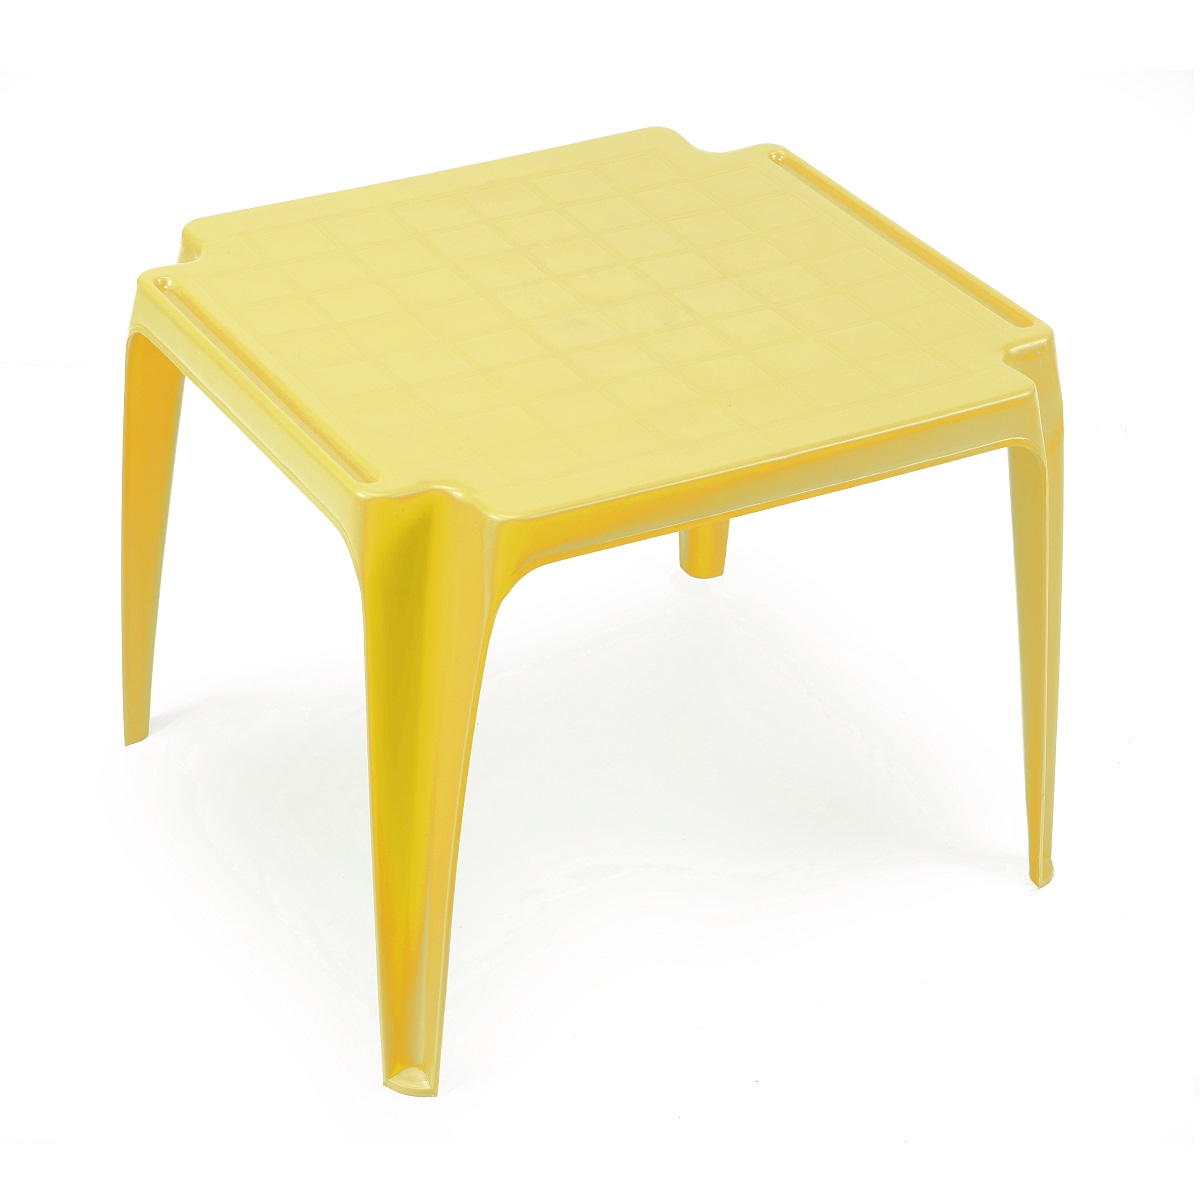 Table de jardin enfant jaune pas cher 